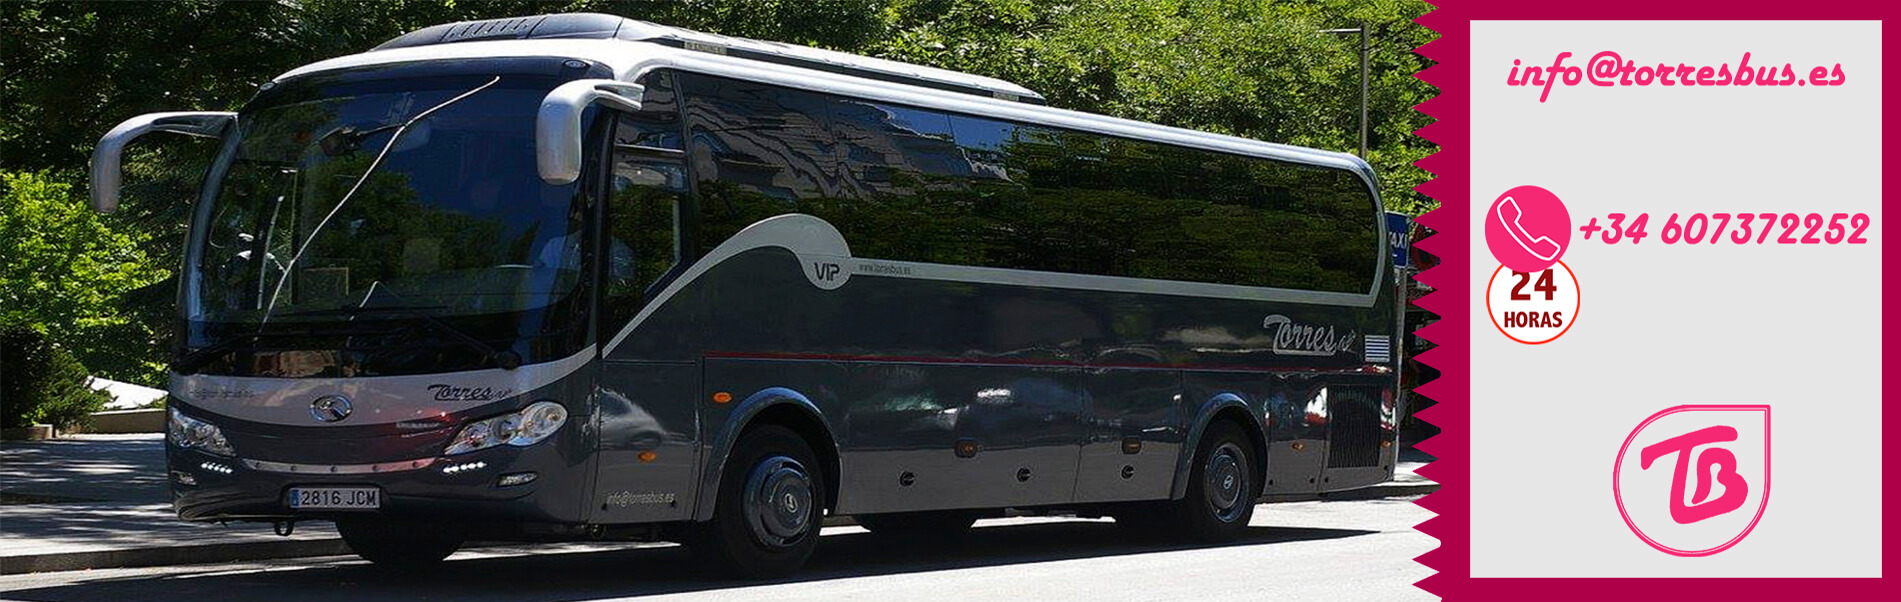 Alquilar un bus de 35 o 54 plazas en Madrid